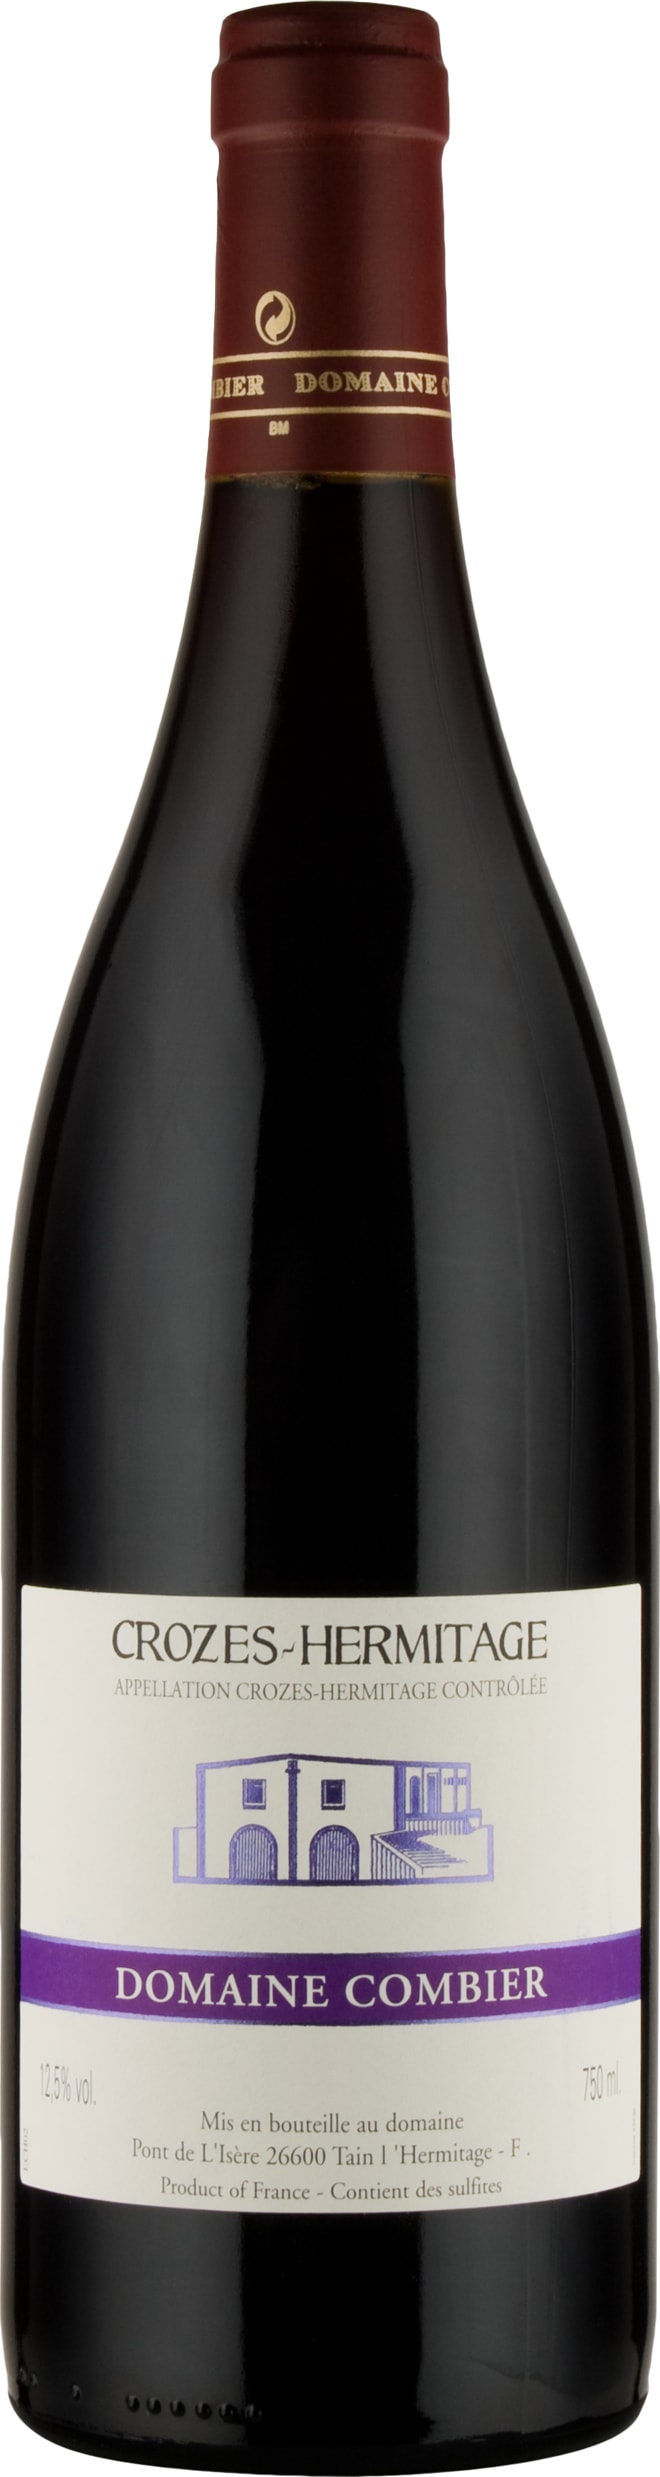 Laurent Combier Crozes-Hermitage 2021 75cl - Buy Laurent Combier Wines from GREAT WINES DIRECT wine shop